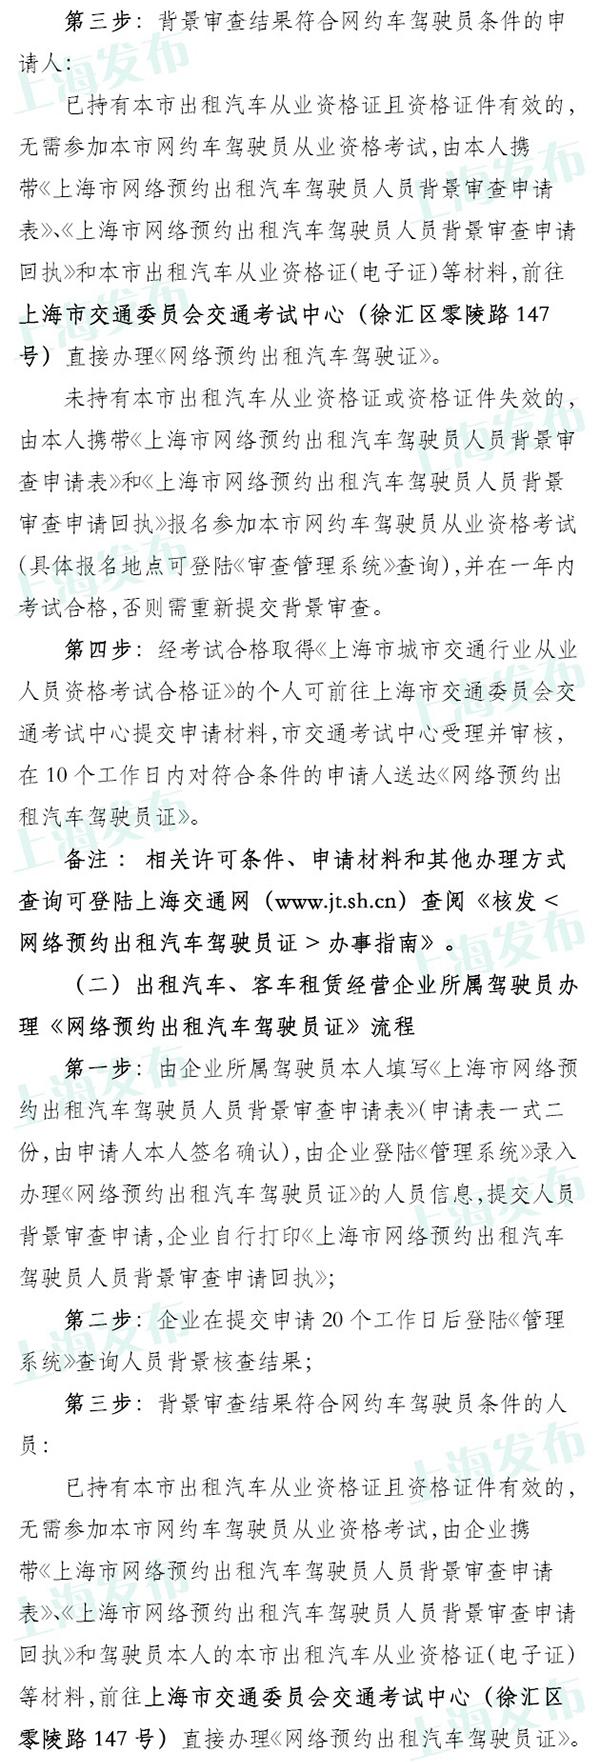 上海明起可申请网约车经营服务许可，具体流程公布